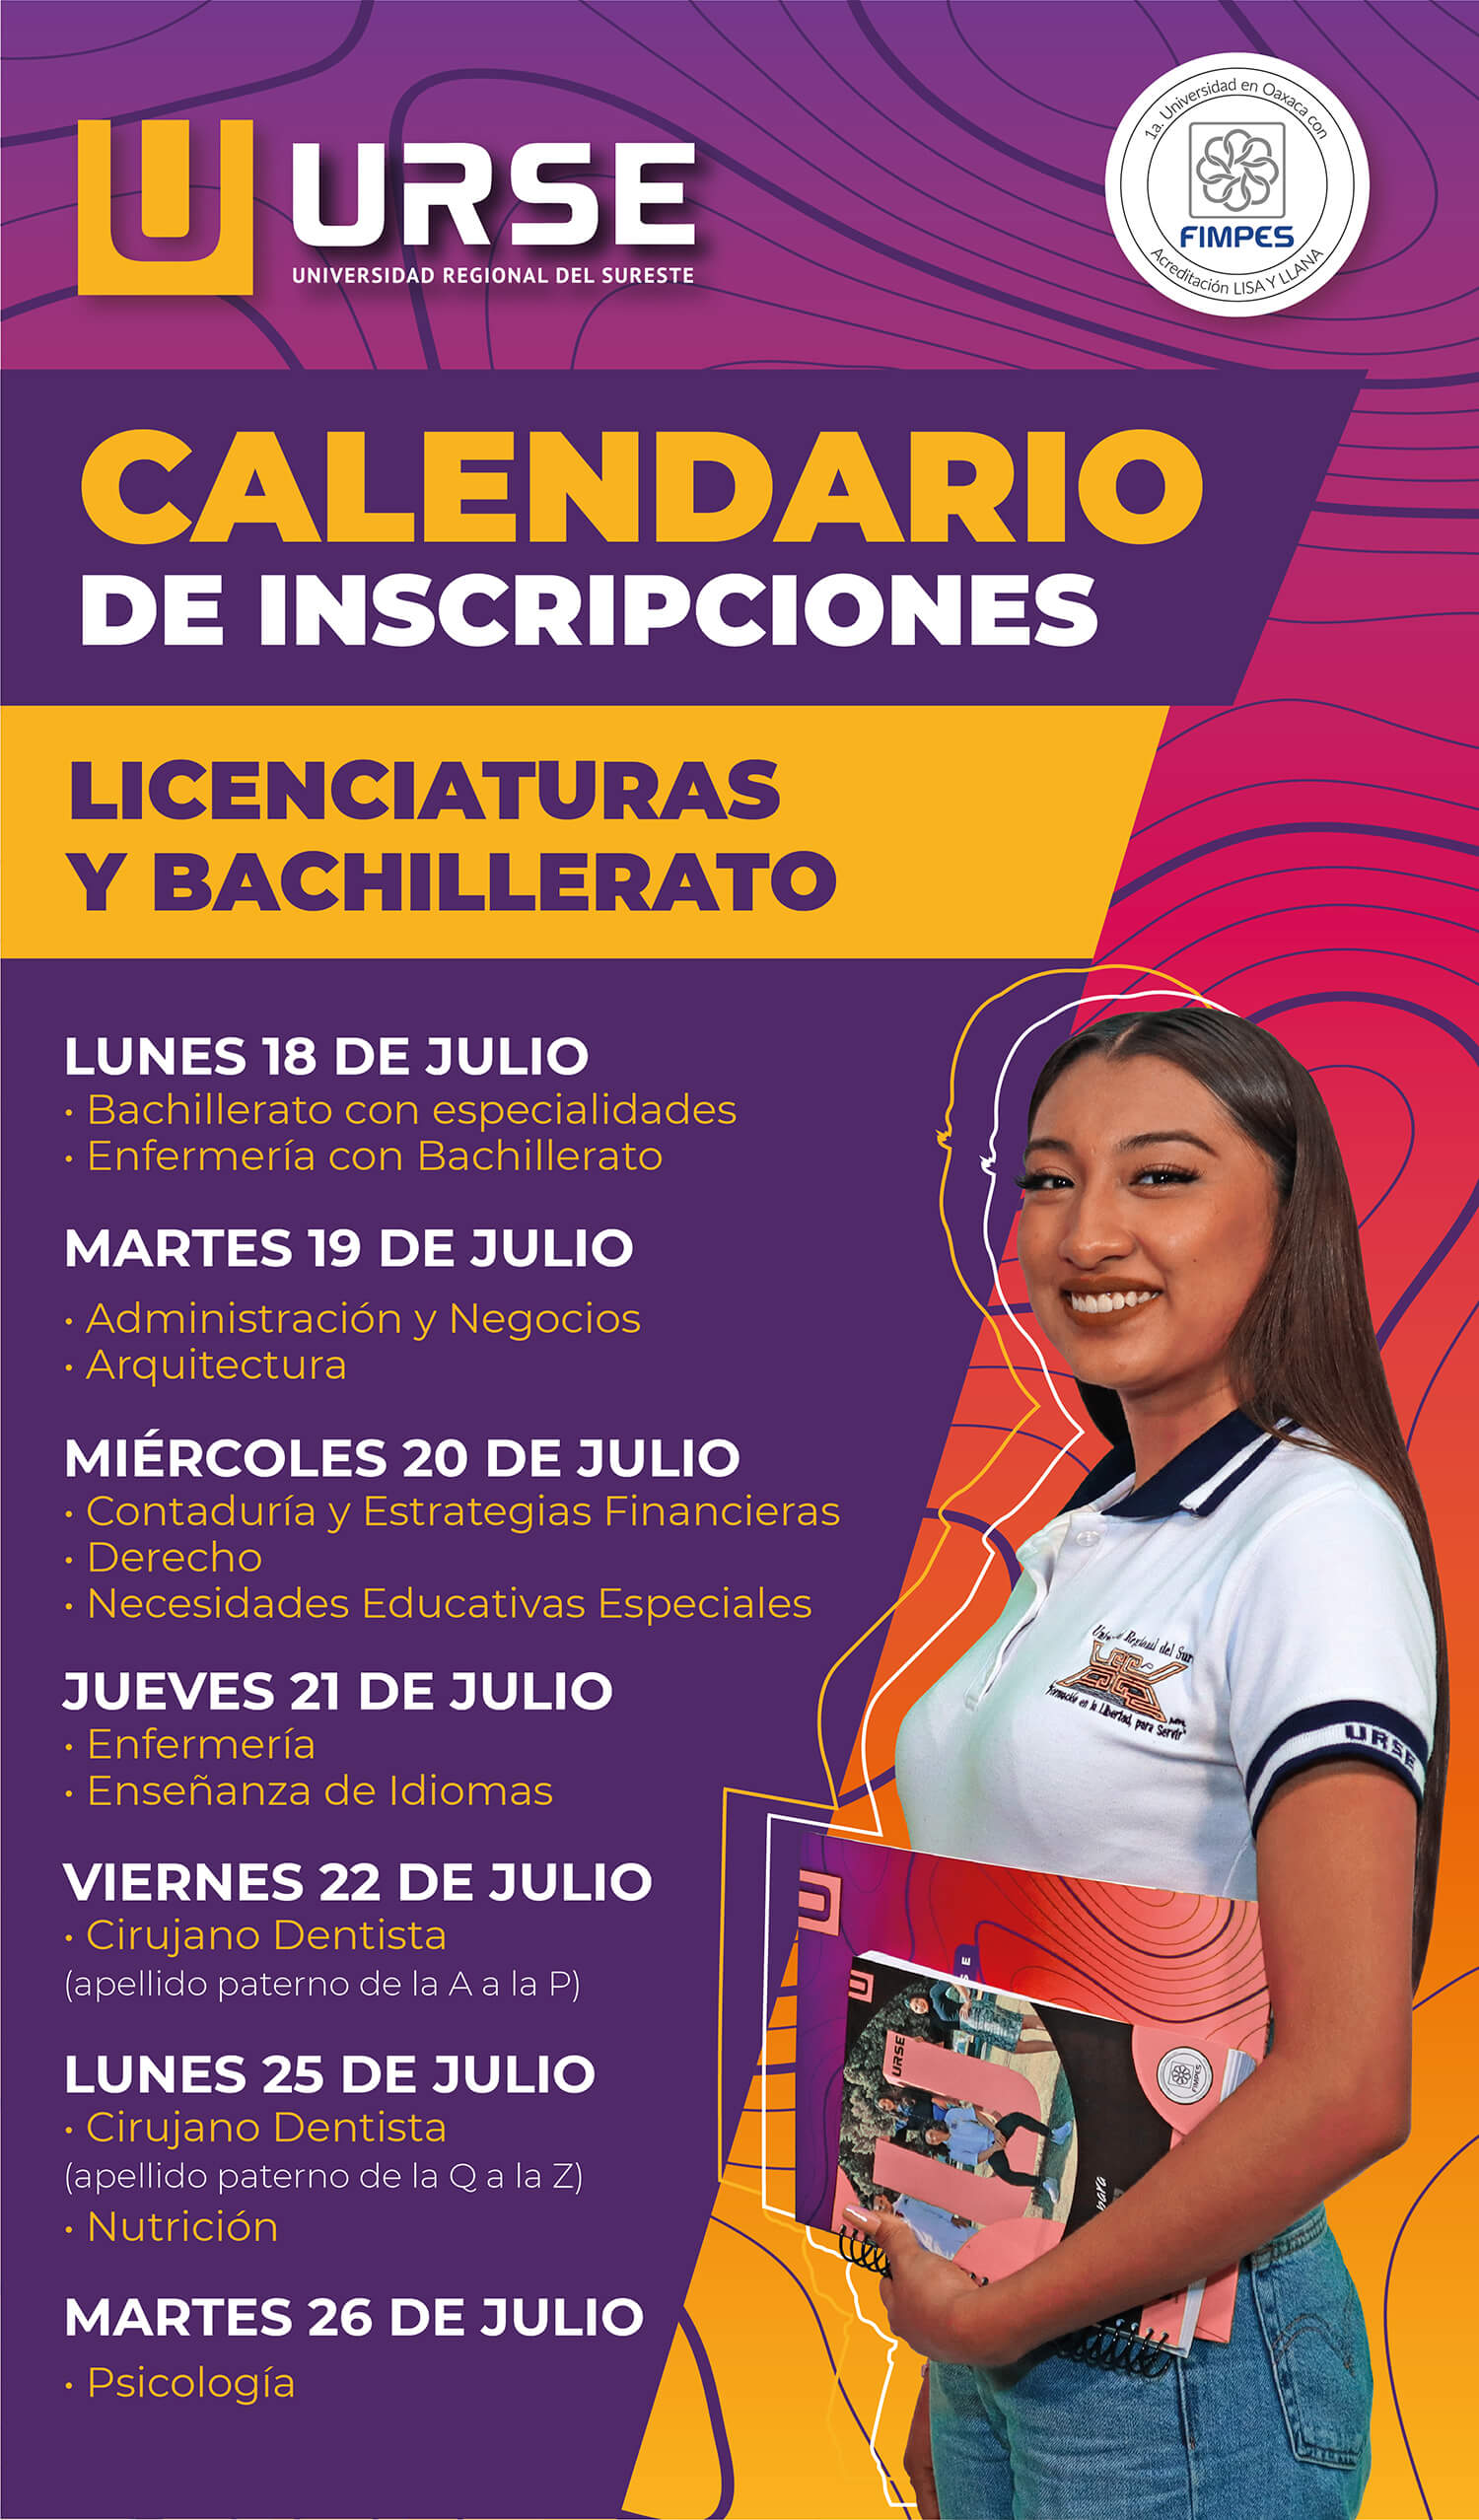 Calendario de inscripciones Licenciaturas y Bachillerato Universidad URSE Licenciaturas